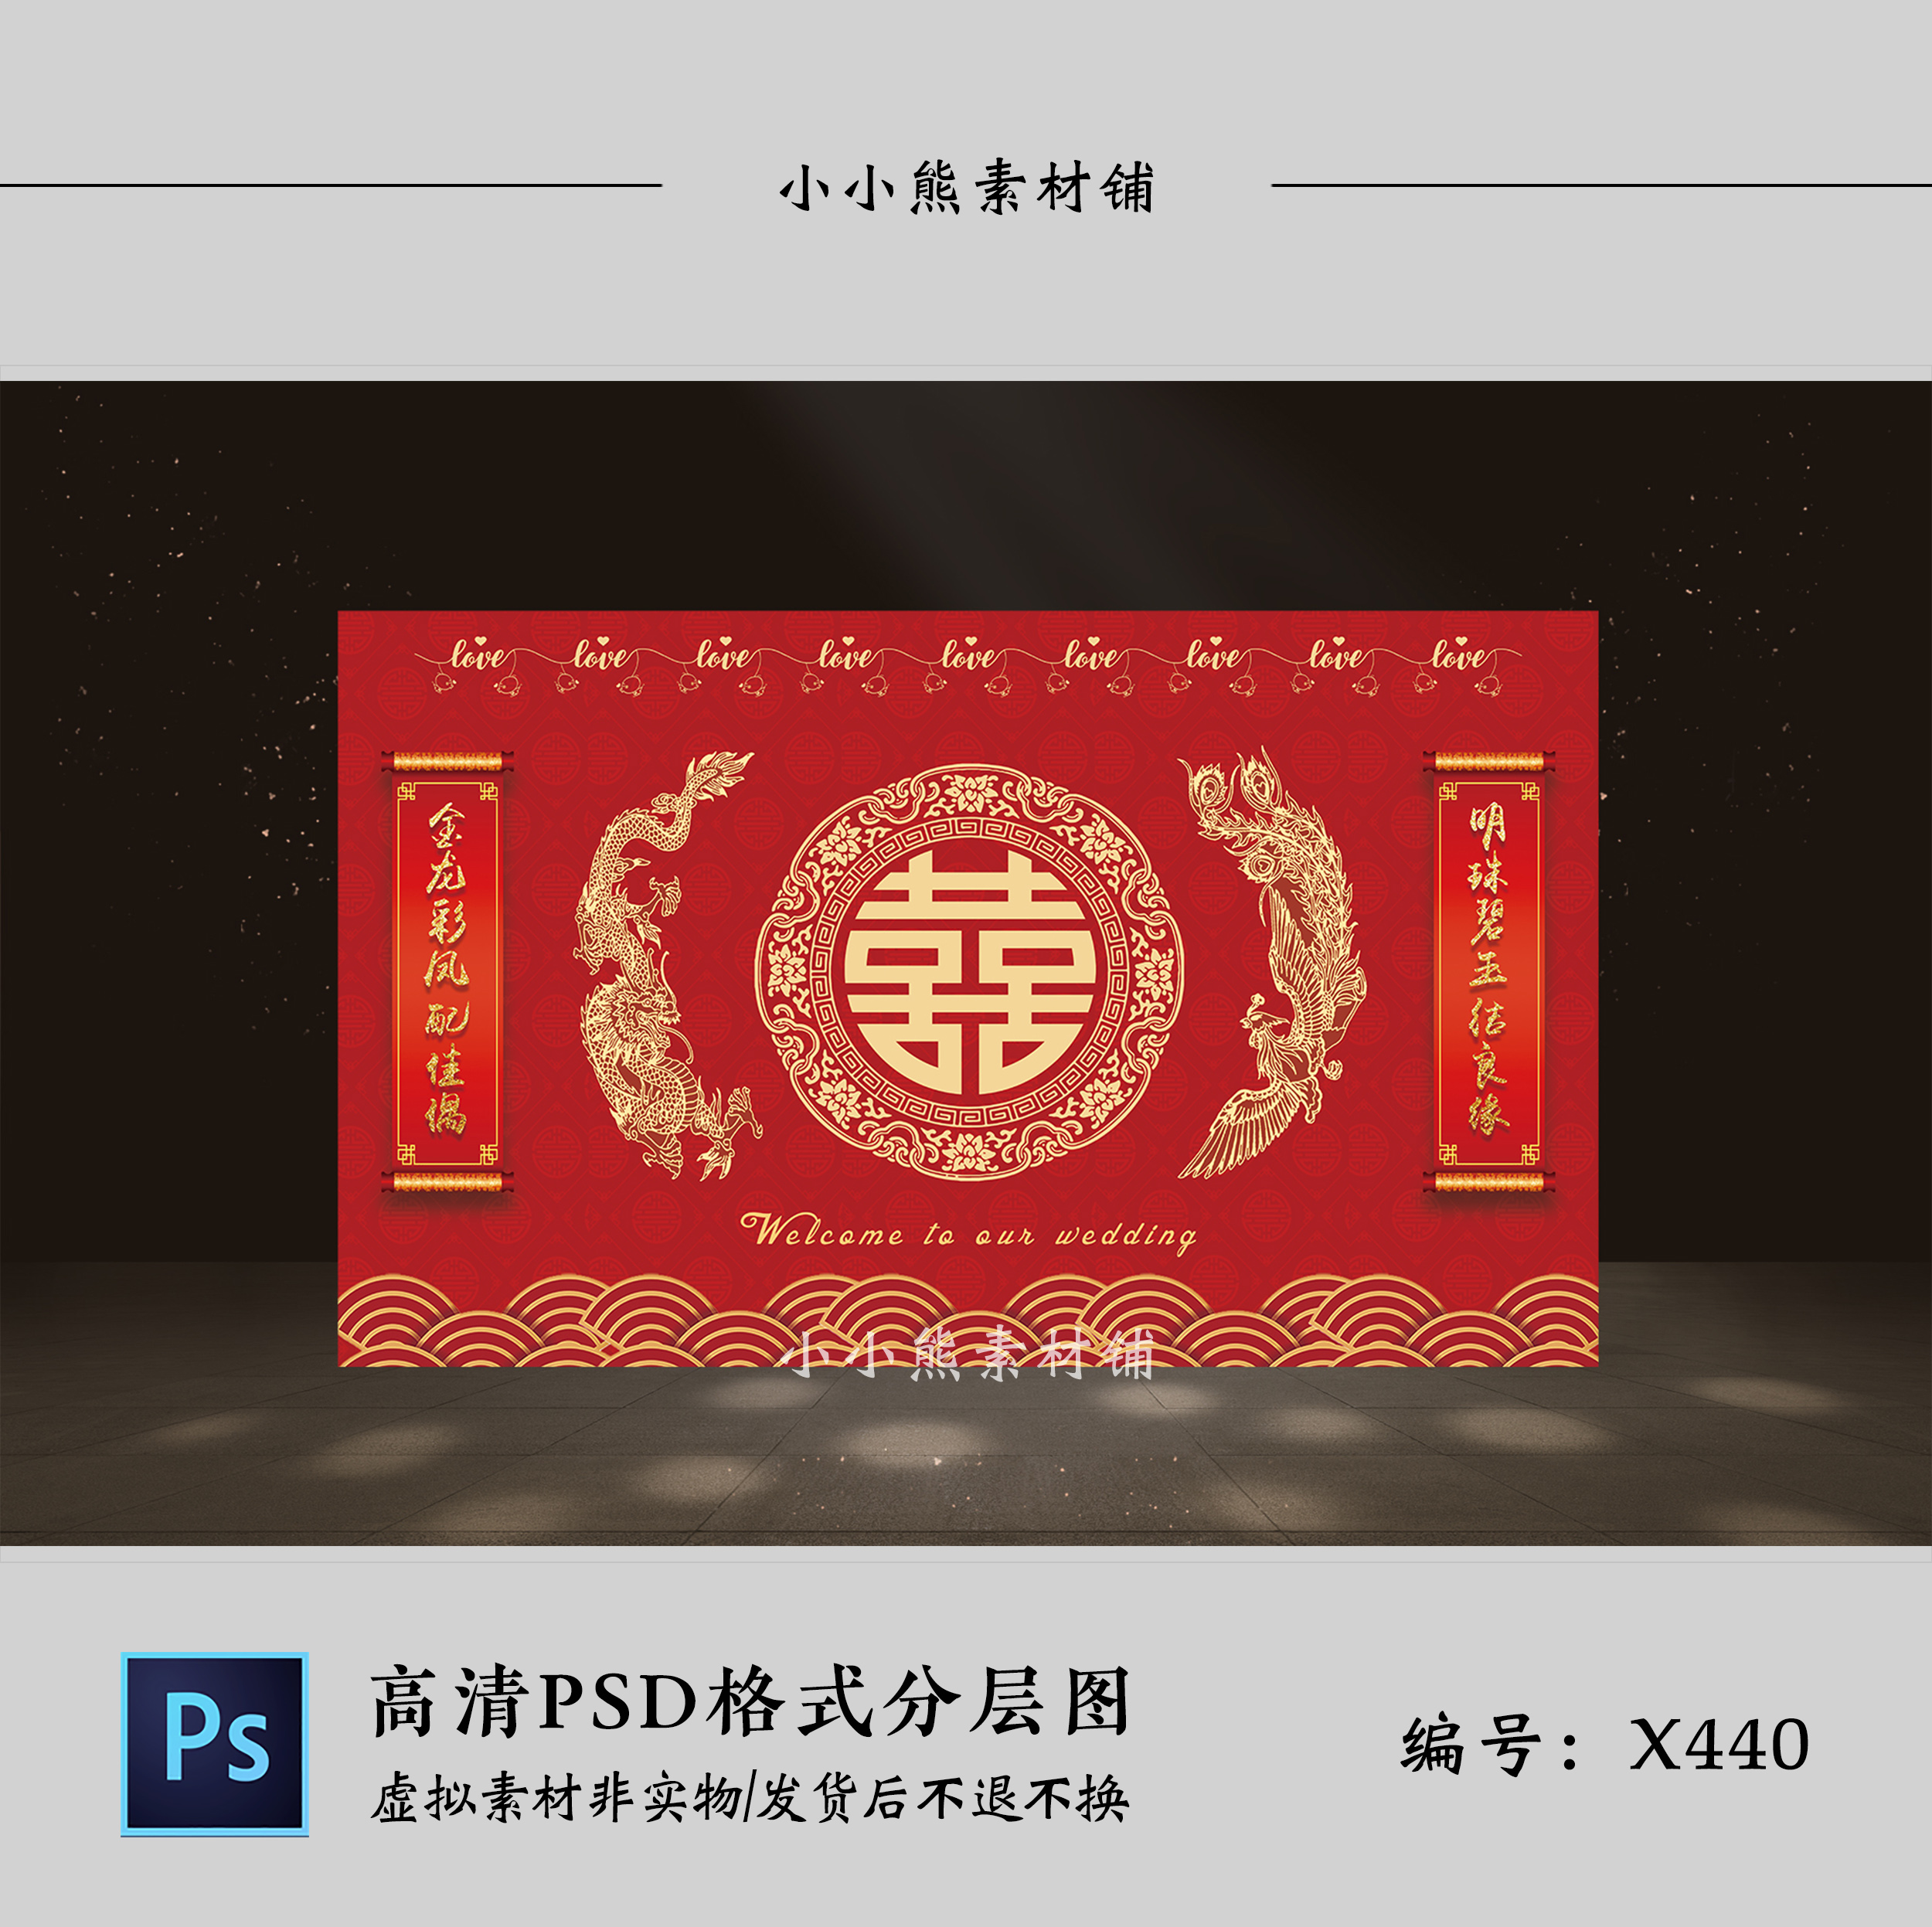 红色喜字龙凤新中式对联婚礼背景墙设计 迎宾签到区效果图PSD模板